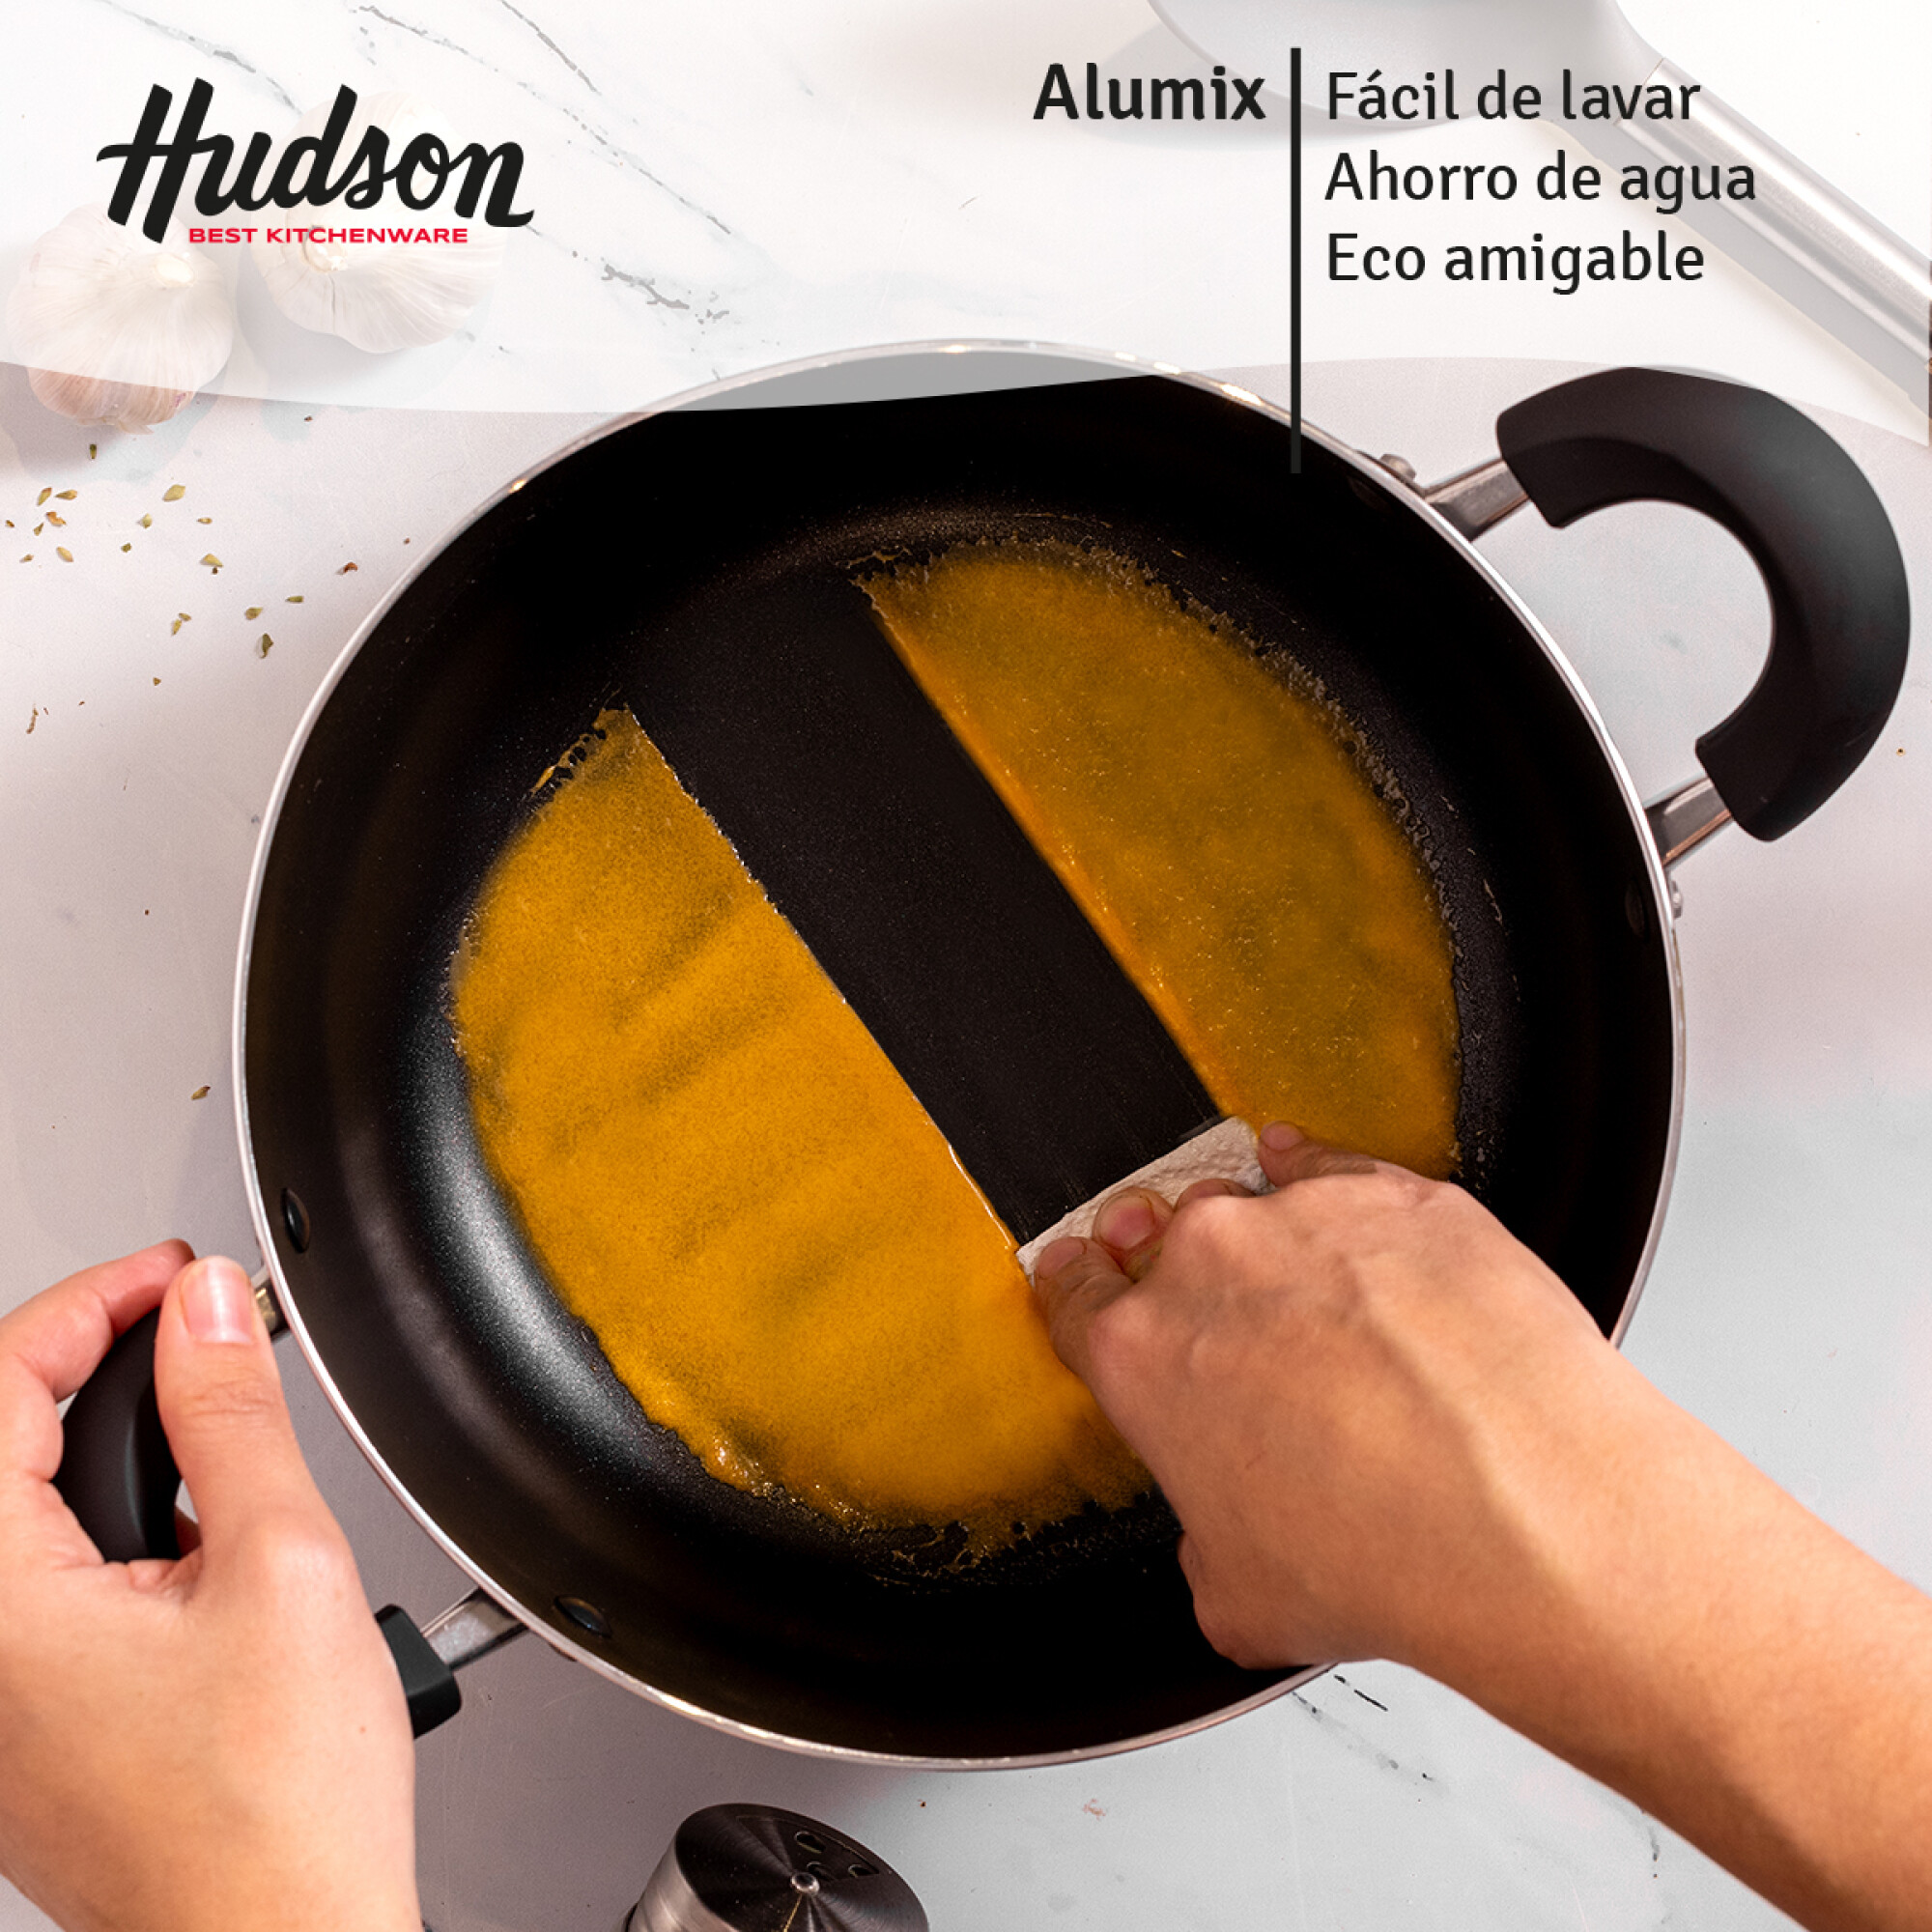 Sartén Antiadherente Aluminio - 20 cm — Hudson Cocina